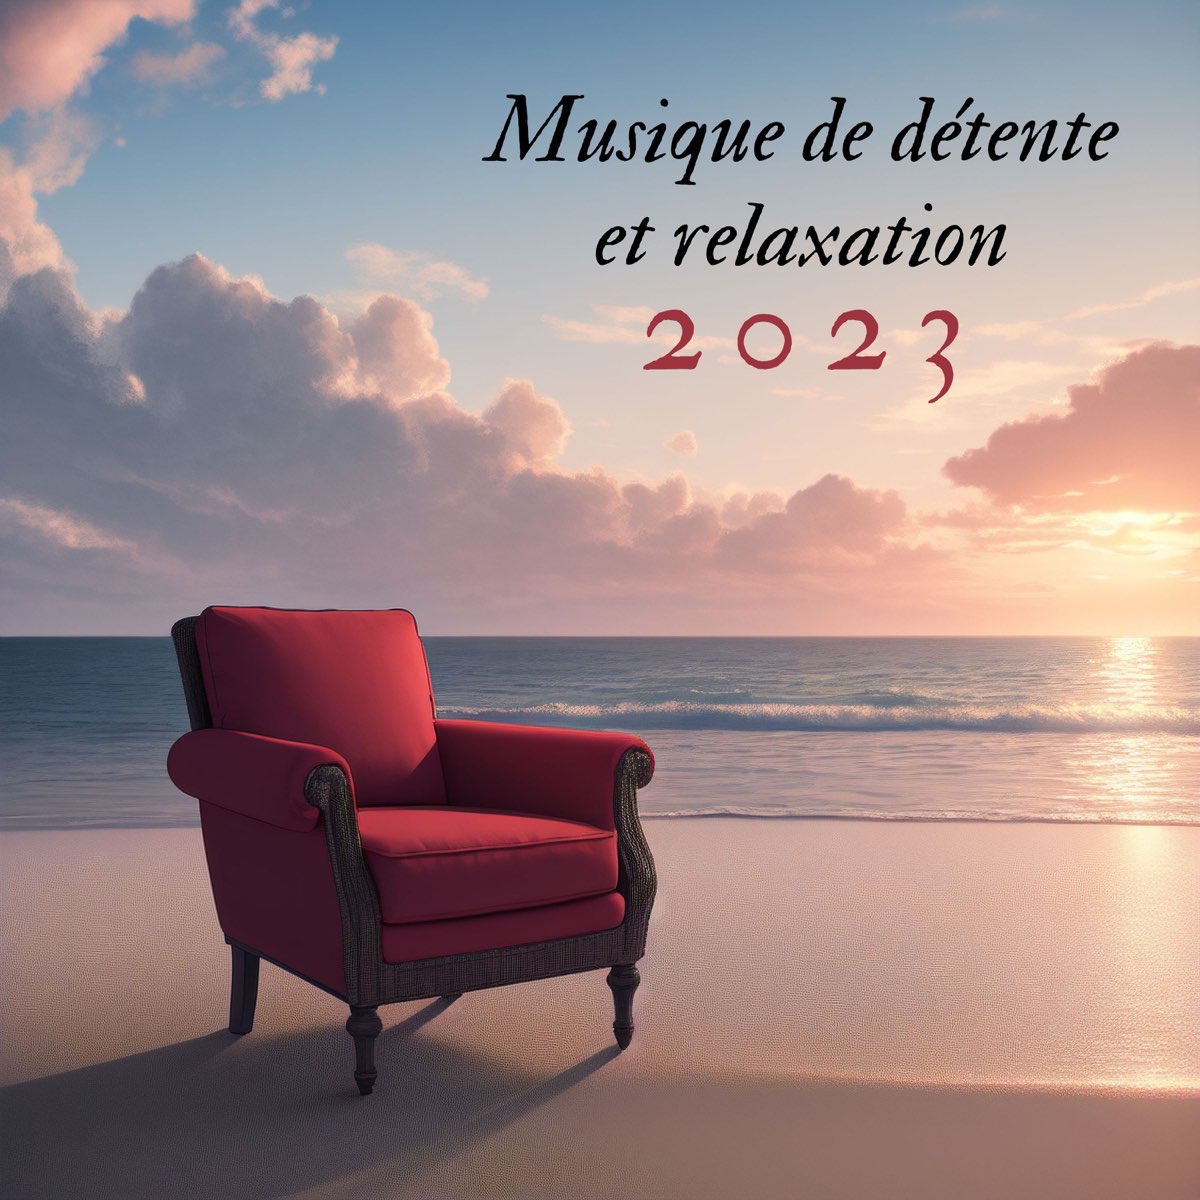 Musique Calme et Relaxation - Détente MP3 Download & Lyrics